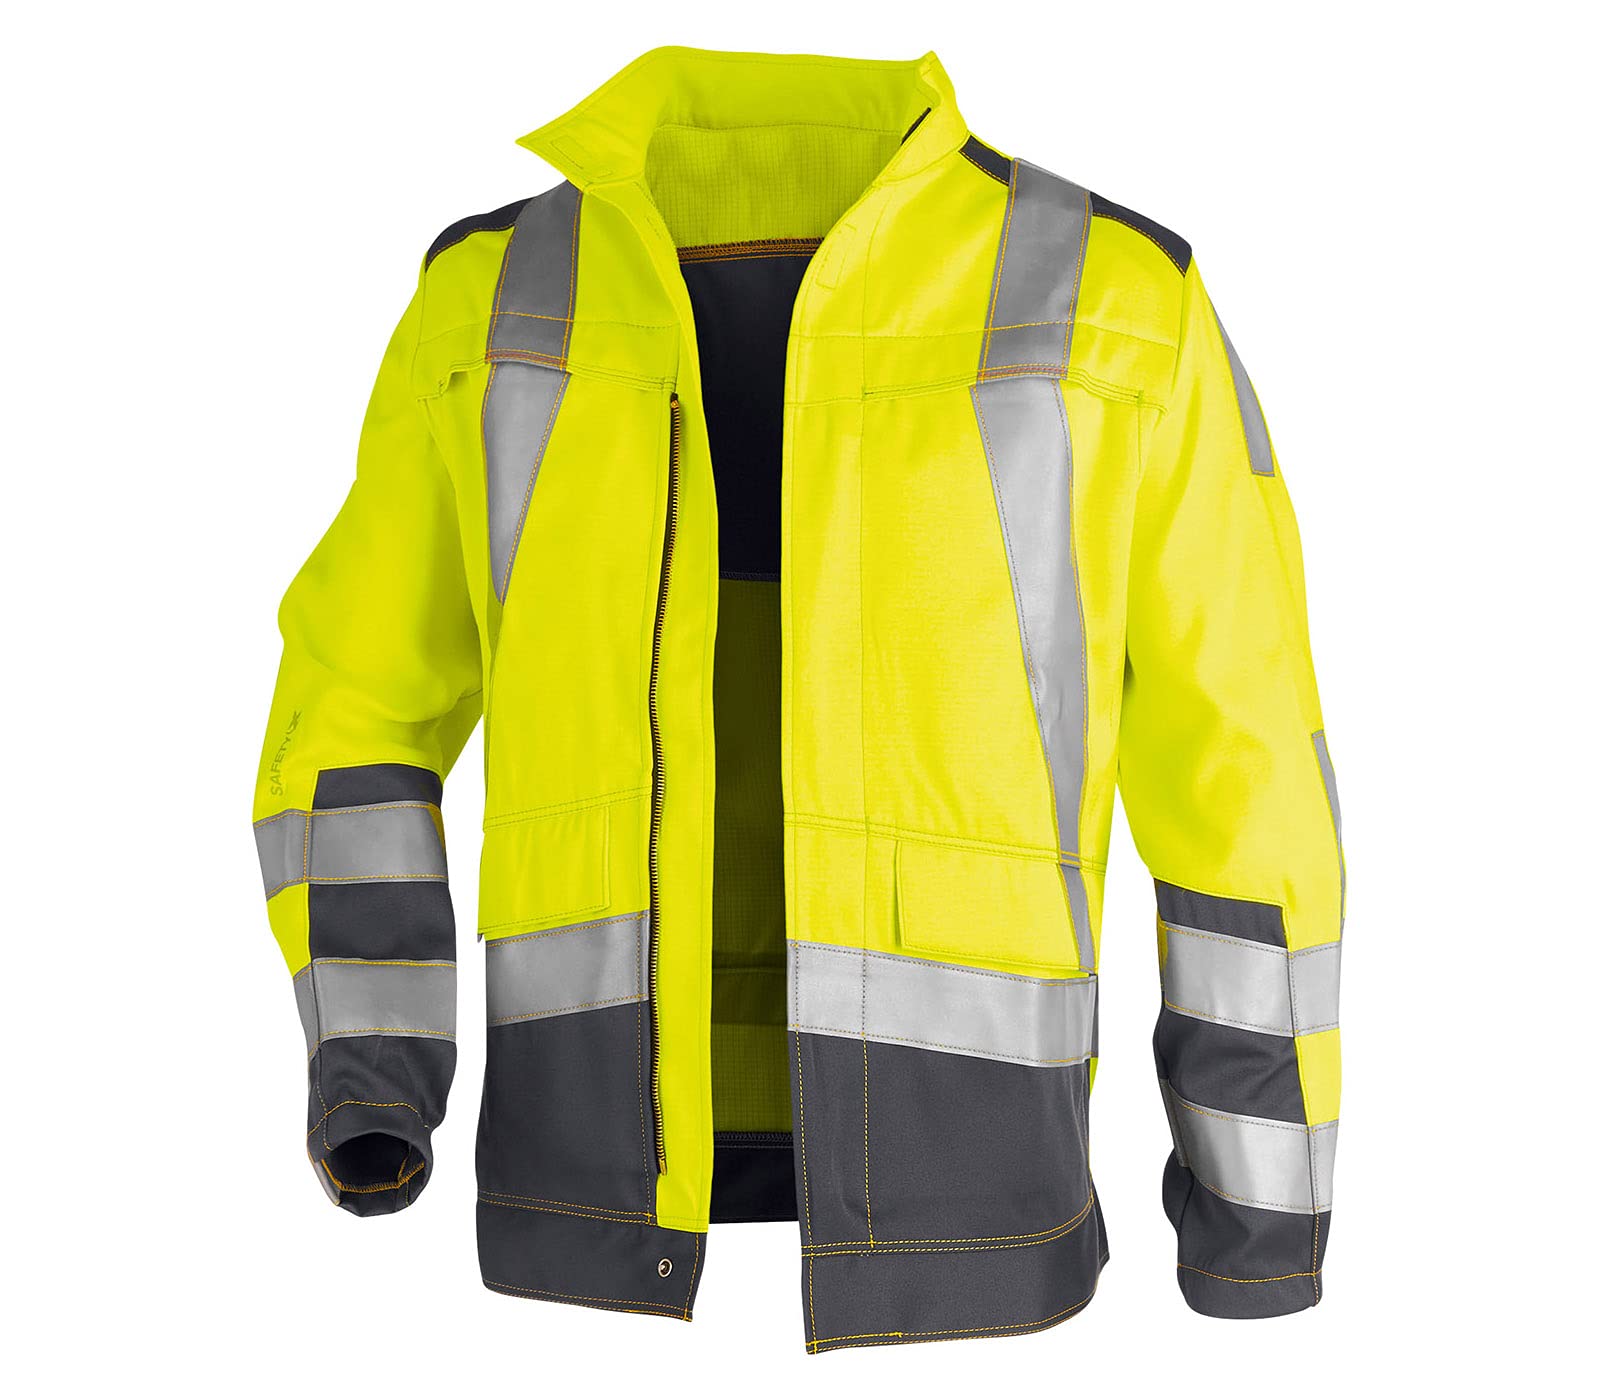 KÜBLER Workwear KÜBLER SAFETY X Arbeitsjacke warngelb, Größe 46, Herren-Arbeitsjacke aus Mischgewebe, zertifizierte Arbeitsjacke